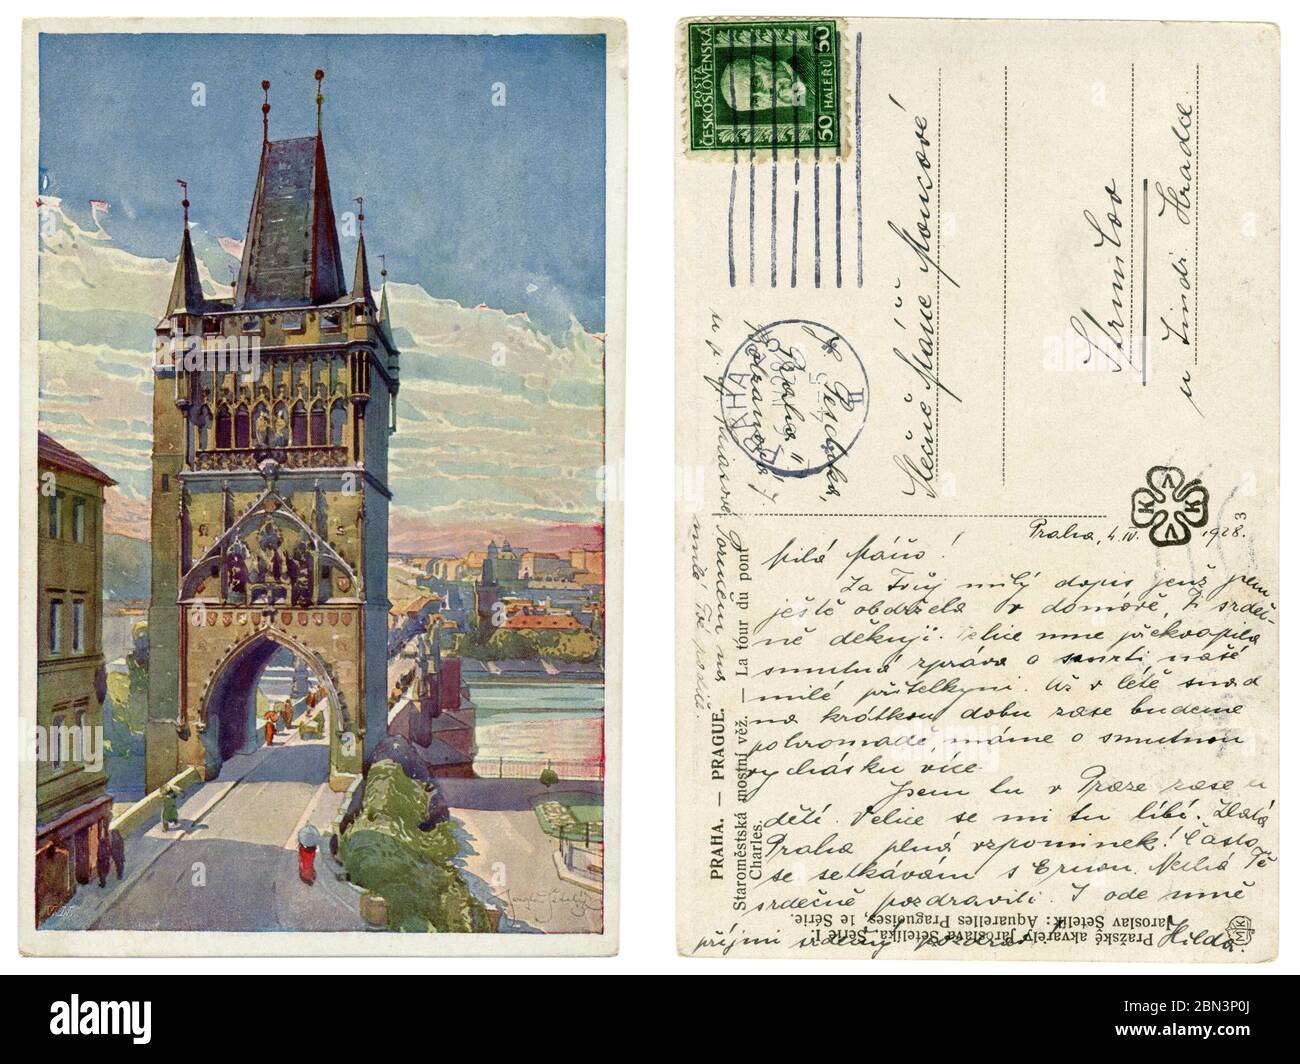 Carte postale historique tchécoslovaque : Tour du pont de la vieille ville et pont Charles en traversant la Vltava, 1928, Prague, première République tchécoslovaque Banque D'Images